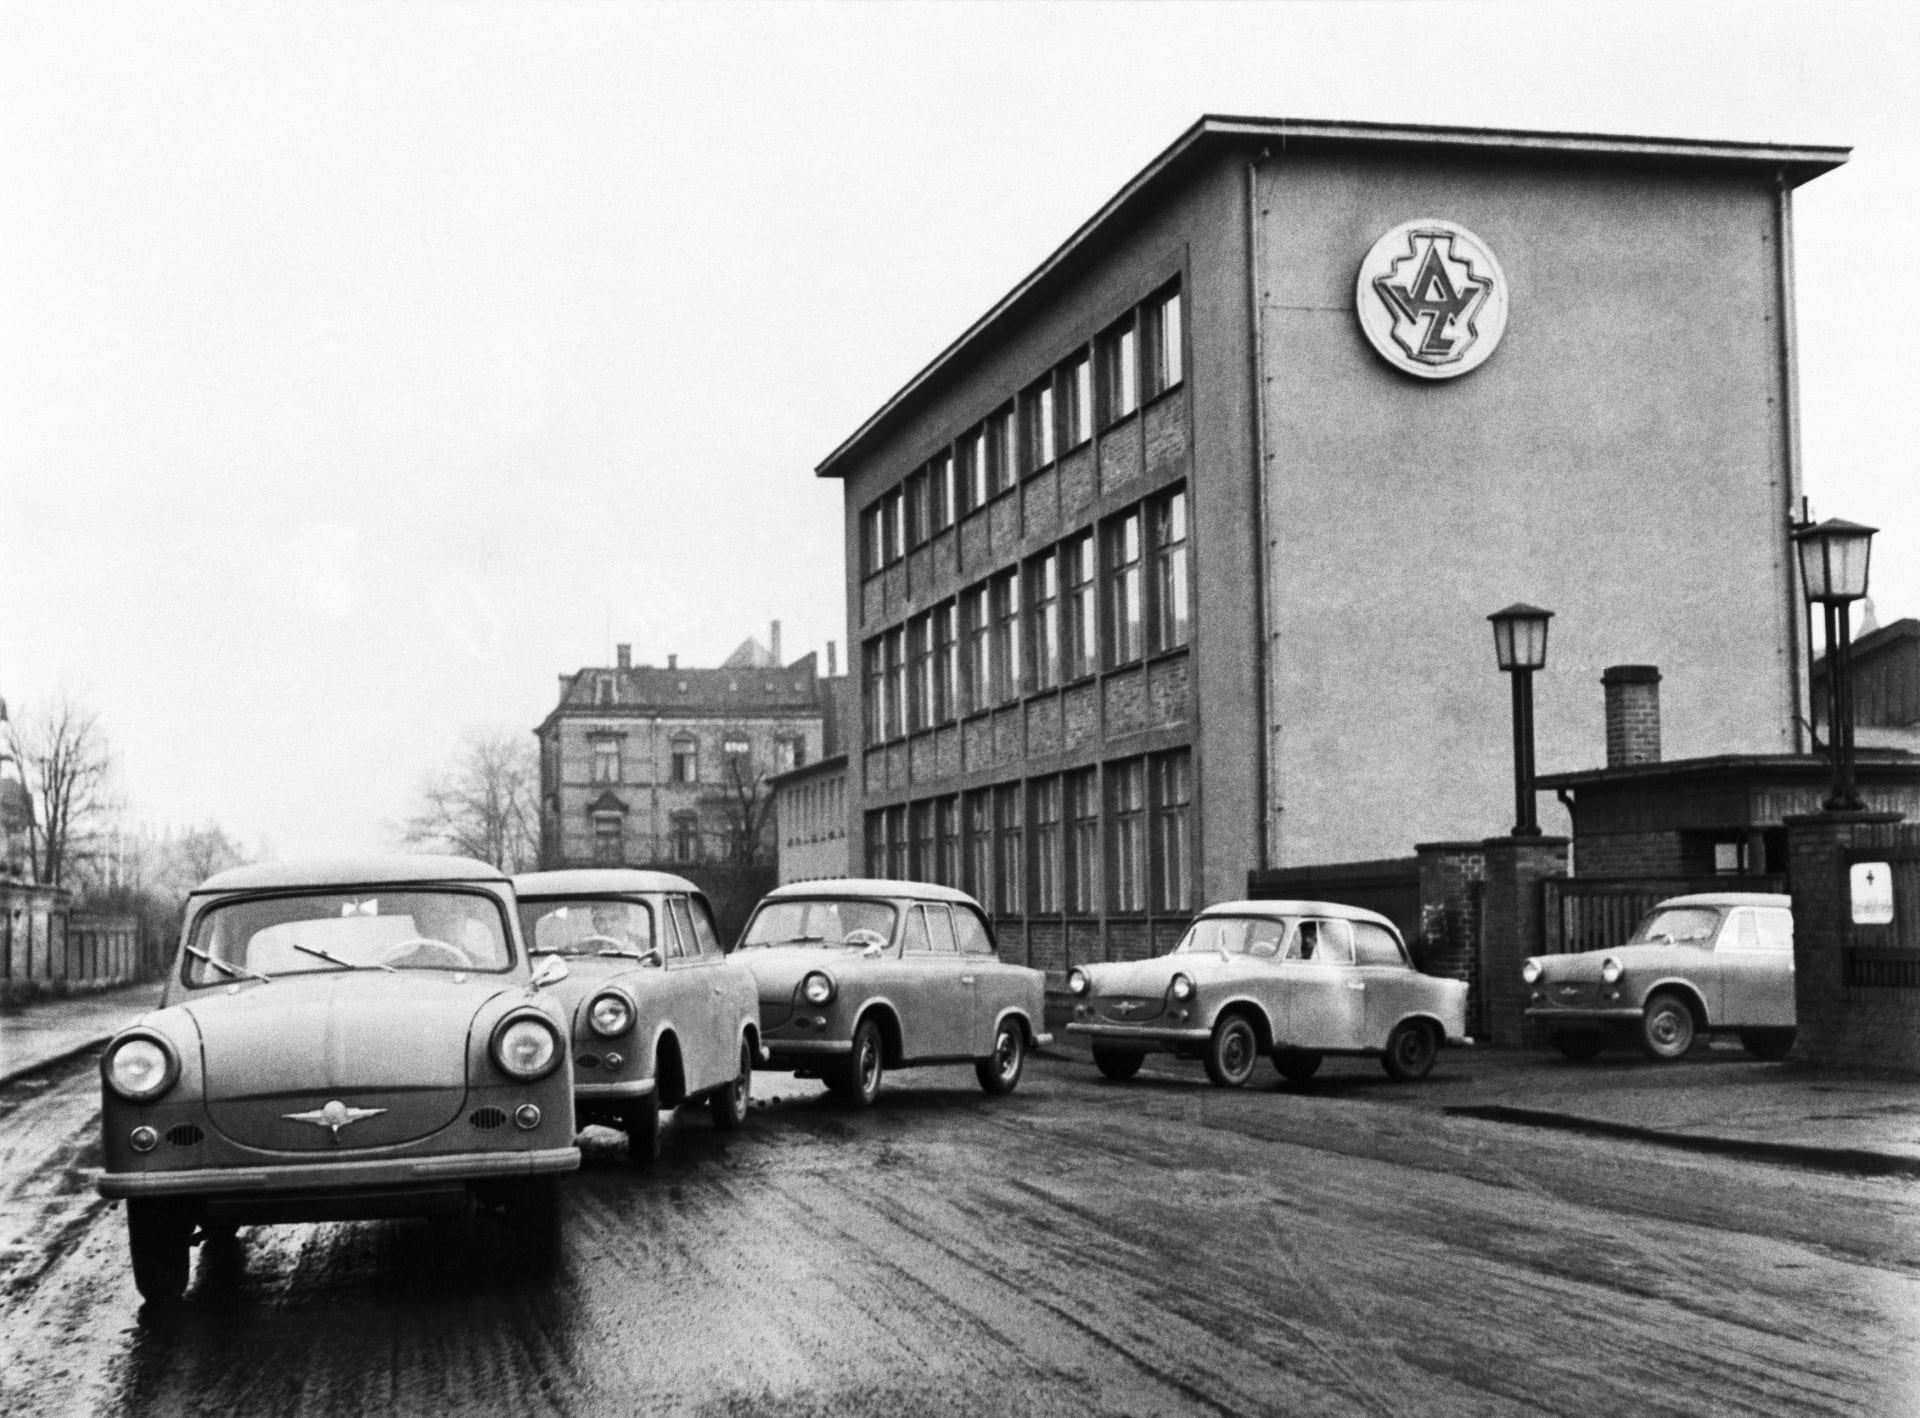 První trabanty byly vyrobeny v roce 1957 v německém Zwickau.